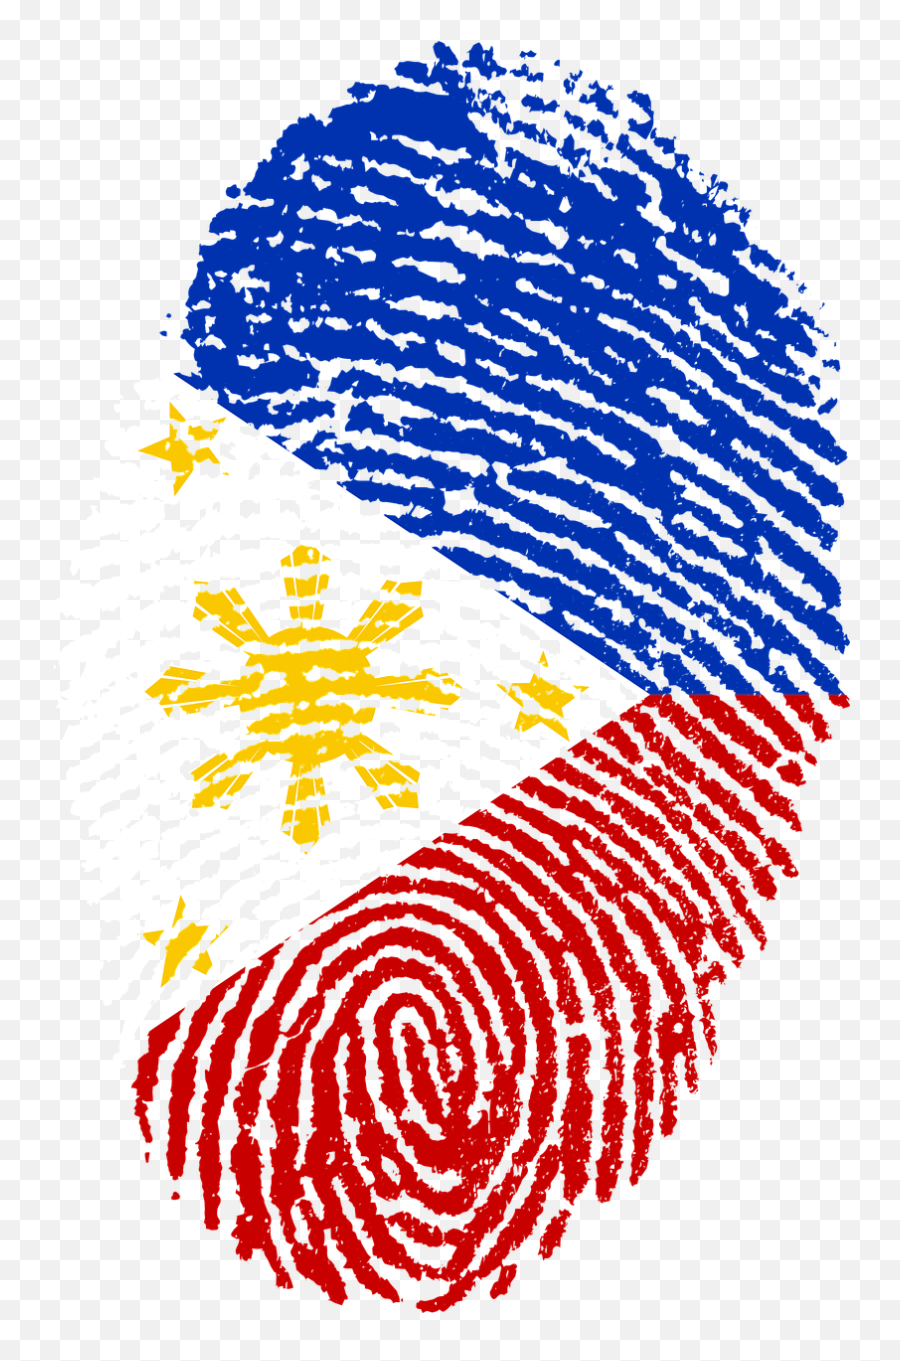 Philippines Flag Fingerprint - Philippine Flag Fingerprint Emoji,Thumbprint Png